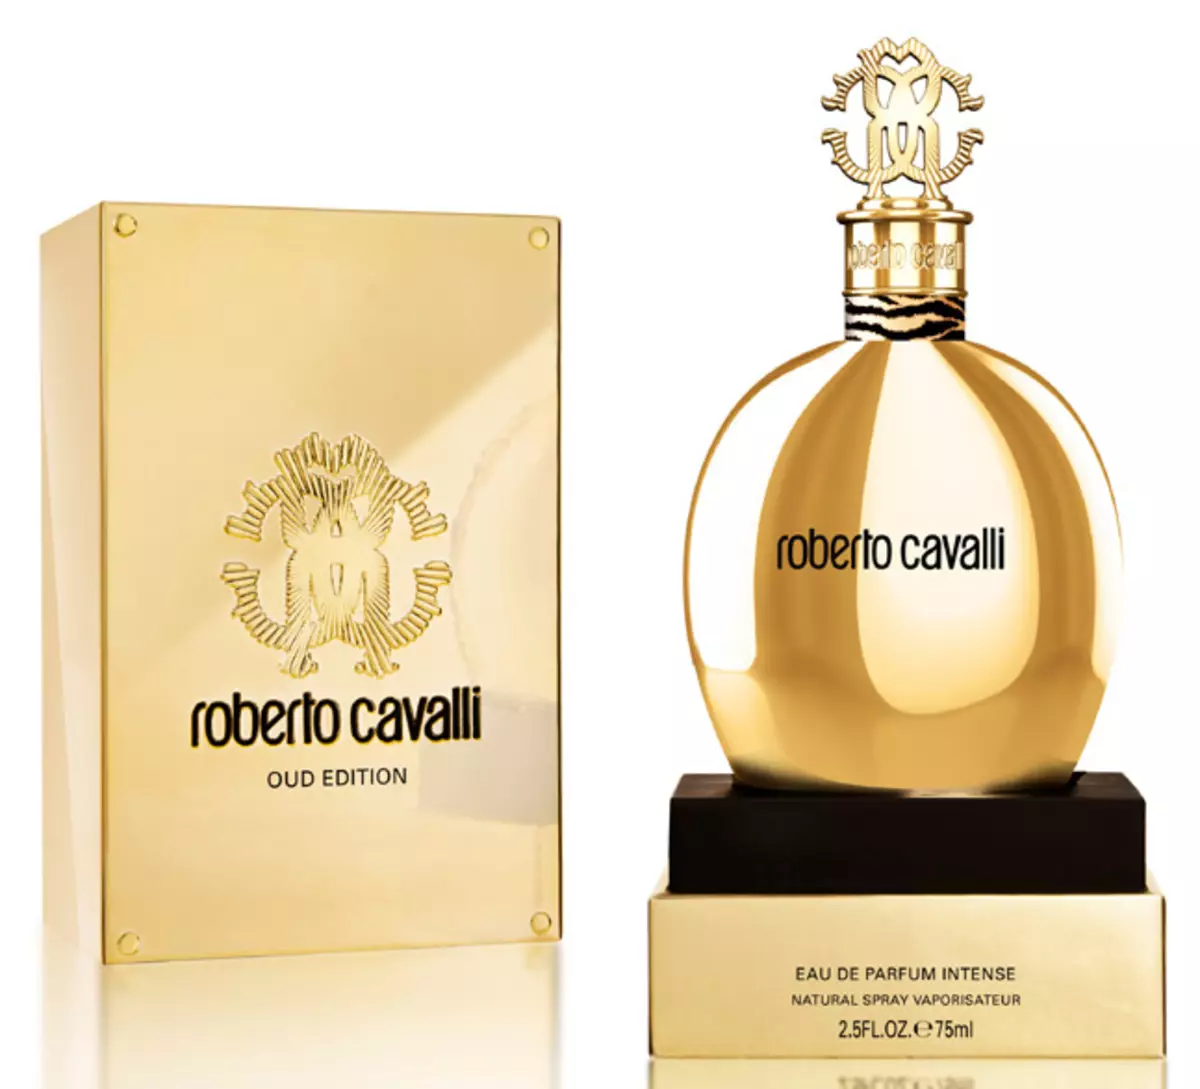 Αρώμα Roberto Cavalli: Άρωμα γυναικών, απλά Cavalli και άλλα νερά τουαλέτας, Aromas Roberto Cavalli Eau de Parfum, Paradiso και Acqua 25296_17